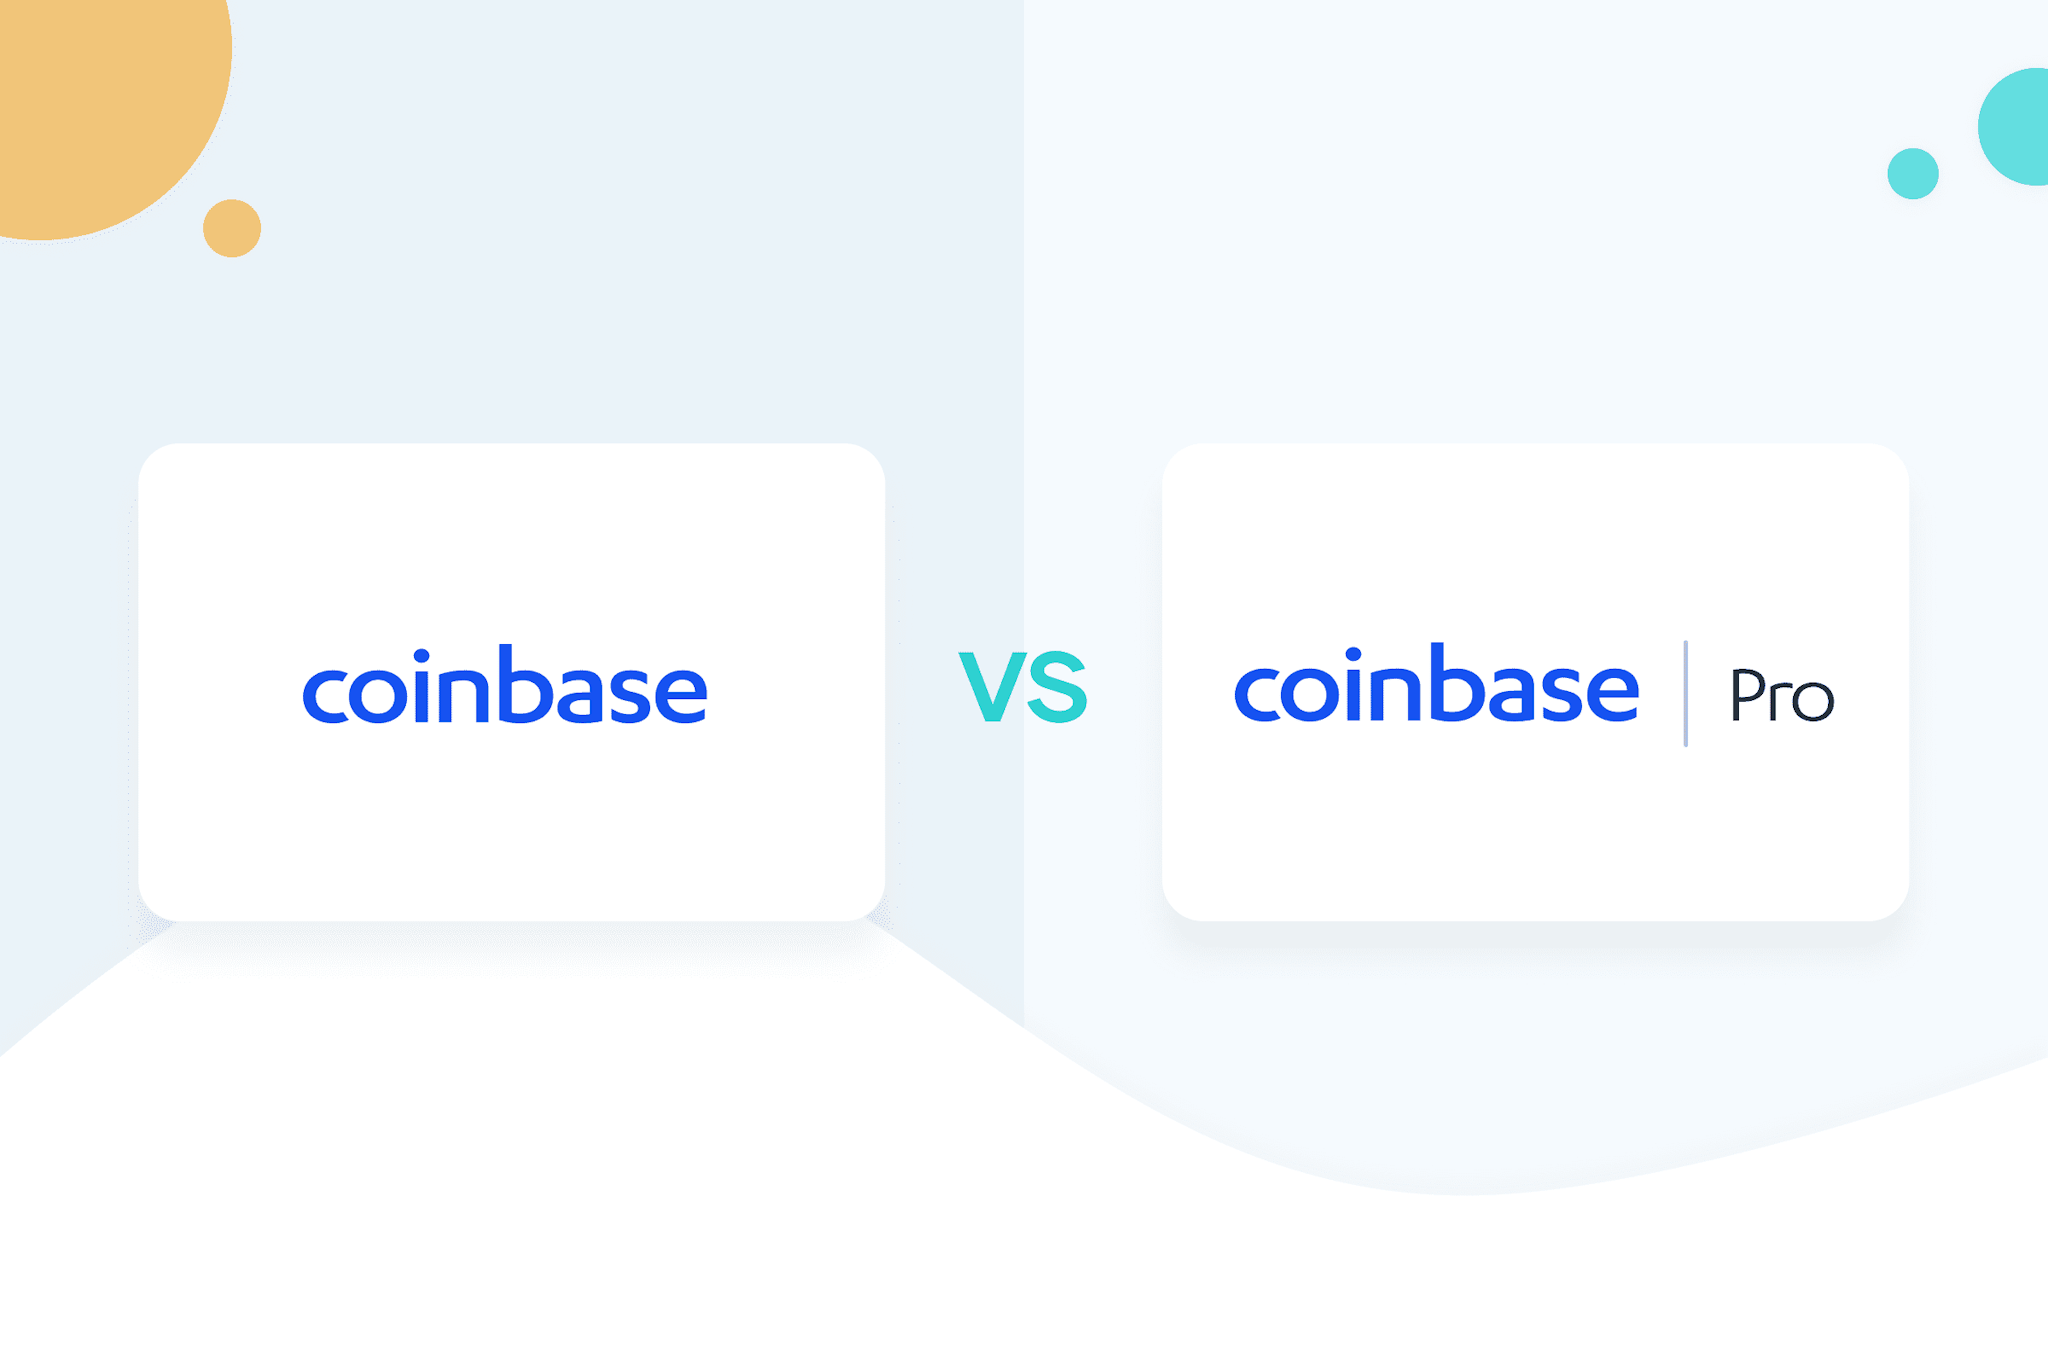 coinbase vs coinbase pro card